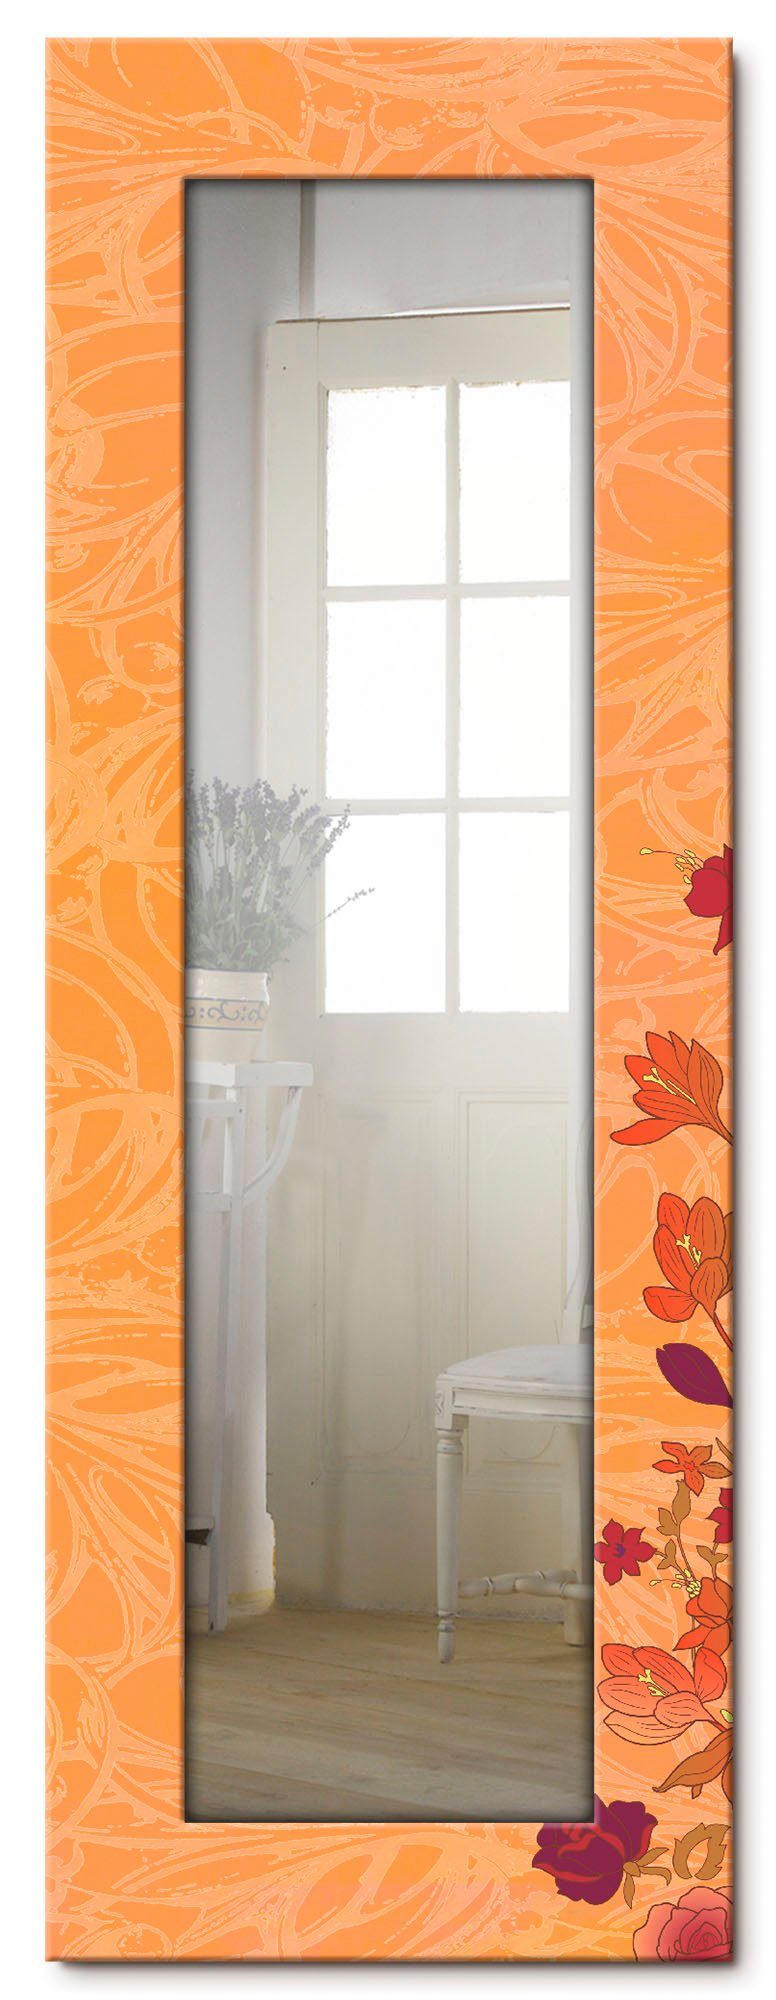 Artland Sierspiegel Bloemen oranje ingelijste spiegel voor het hele lichaam met motiefrand, geschikt voor kleine, smalle hal, halspiegel, mirror spiegel omrand om op te hangen